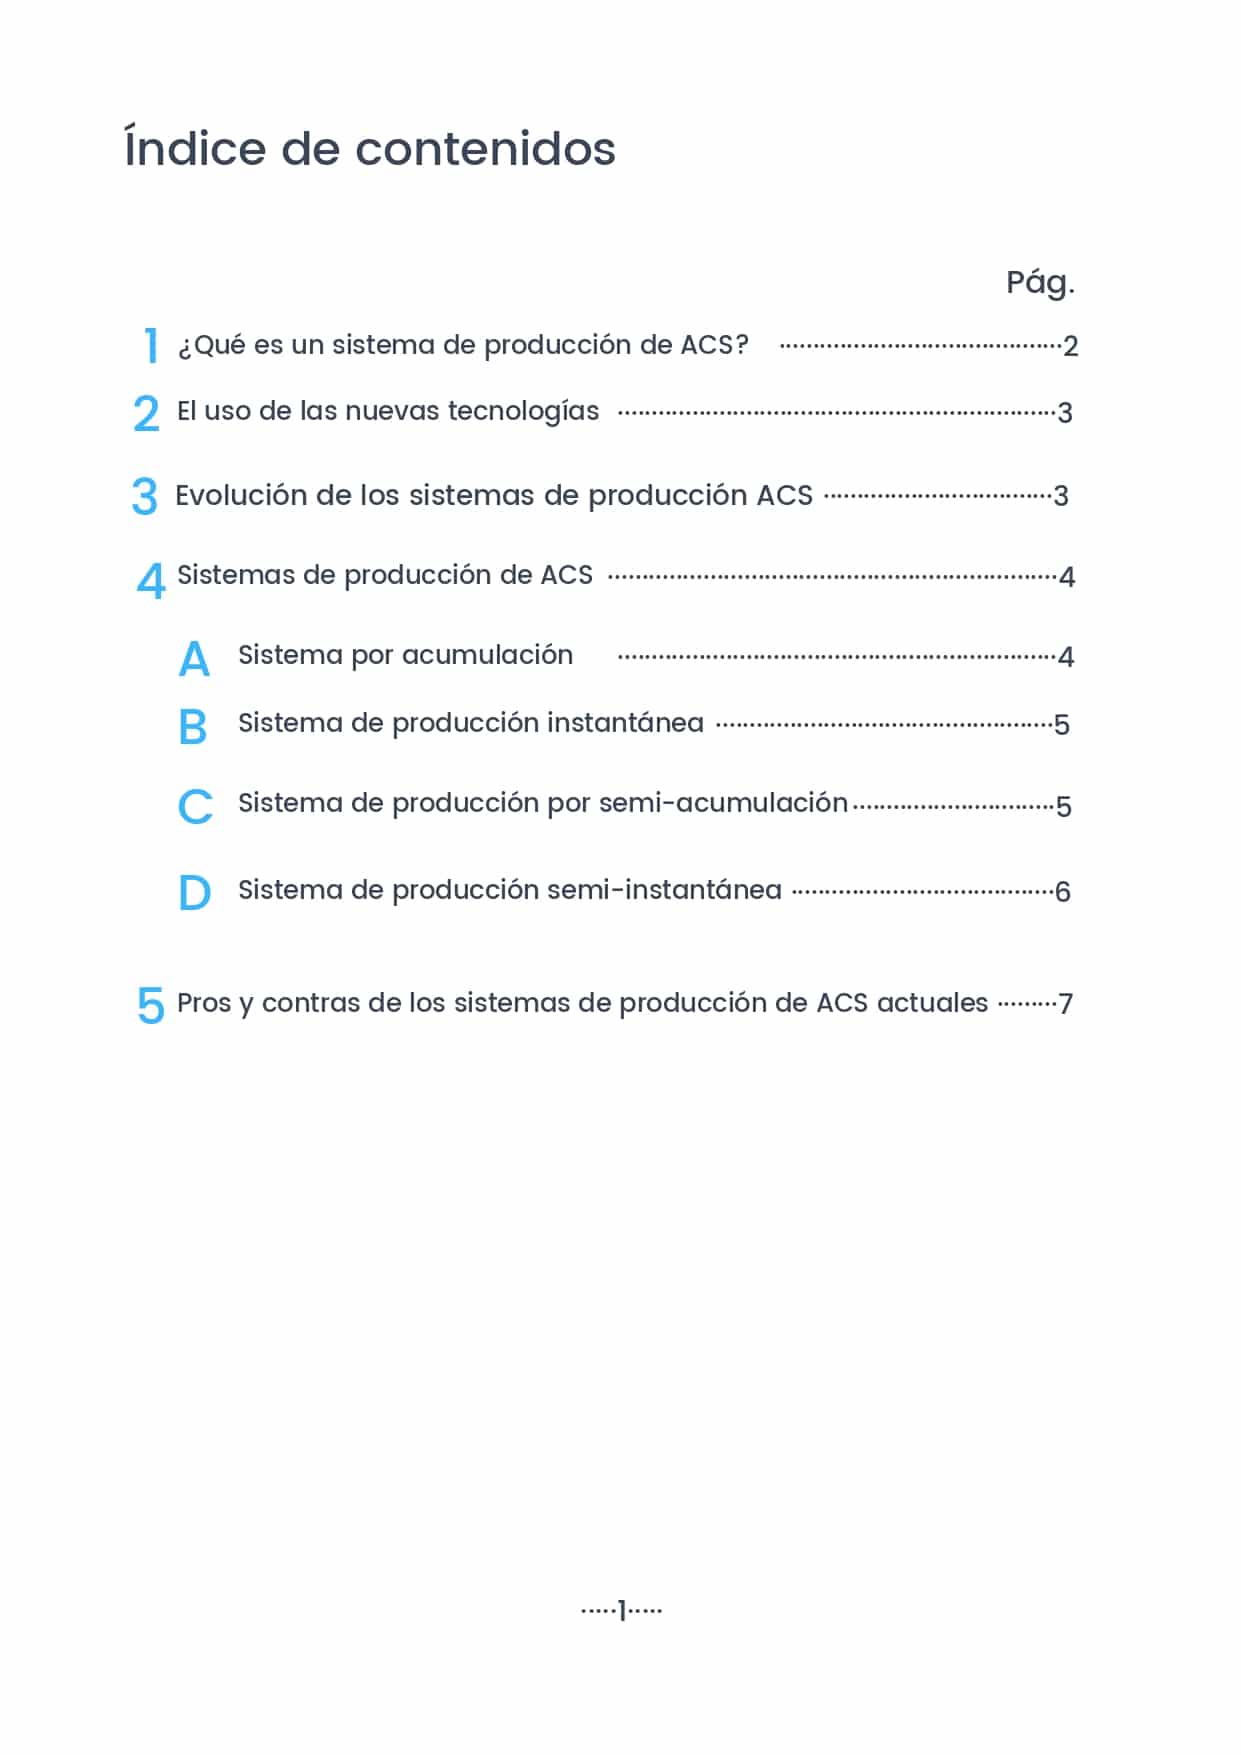 Guia comparativa Sistemas de producccion ACS 2 page 0001